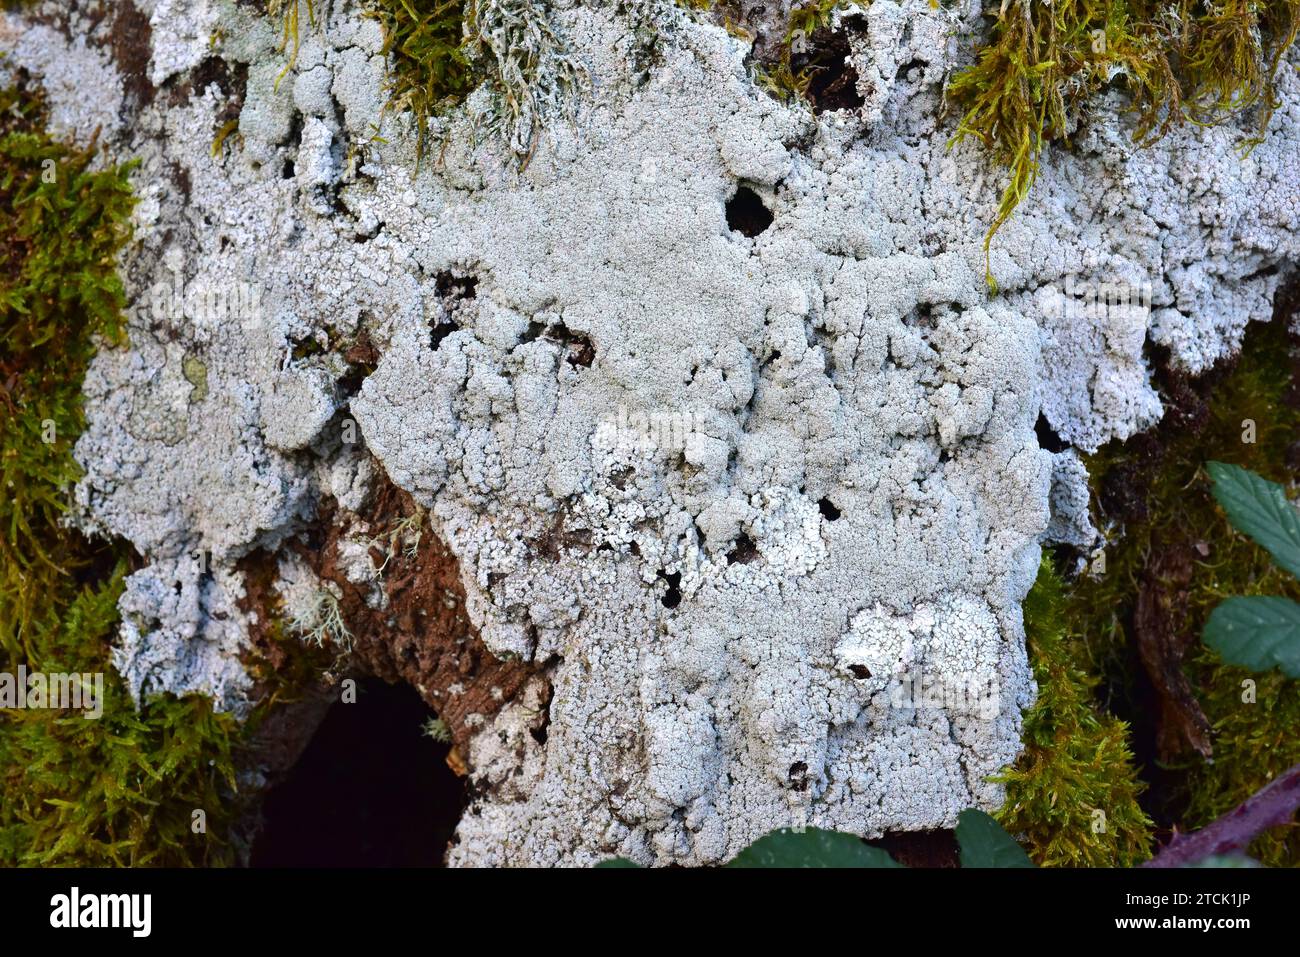 Pertusaria amara (grey) and Pertusaria albesces (white) two crustoses lichens. This photo was taken in Monte Santiago Natural Monument, Burgos provinc Stock Photo